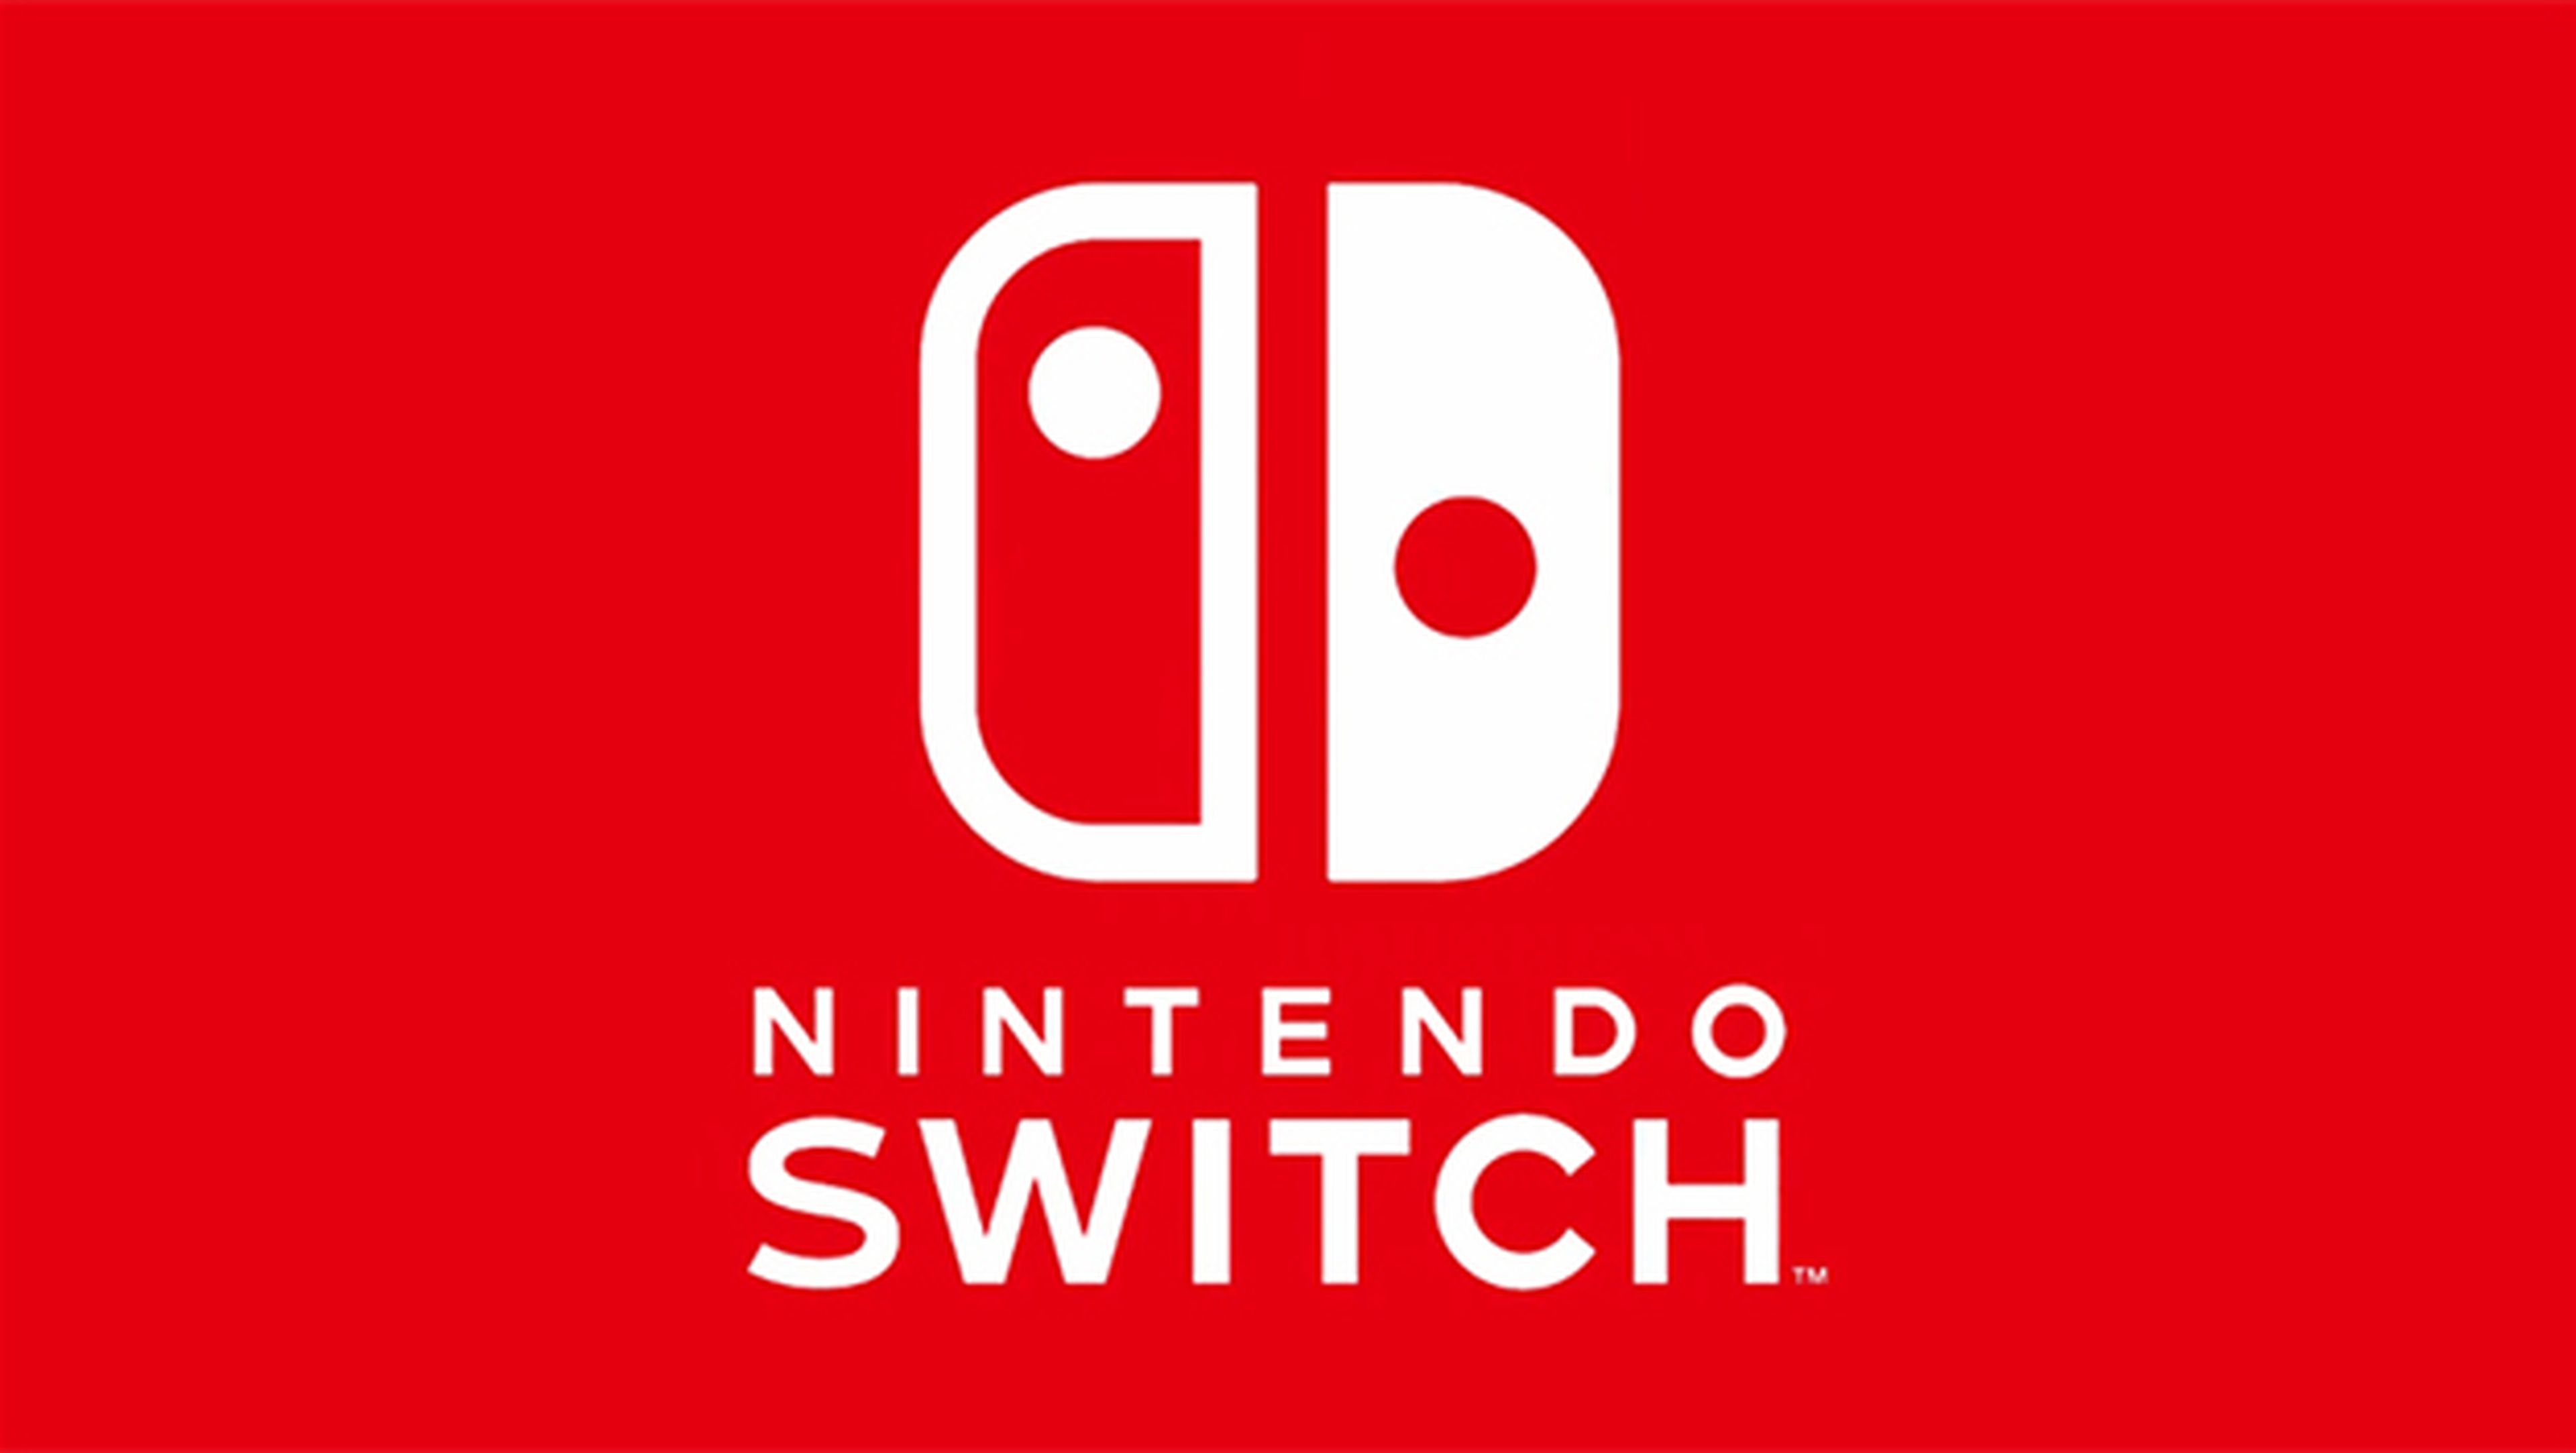 El logo de Nintendo Switch no es simétrico, y aquí lo demostramos